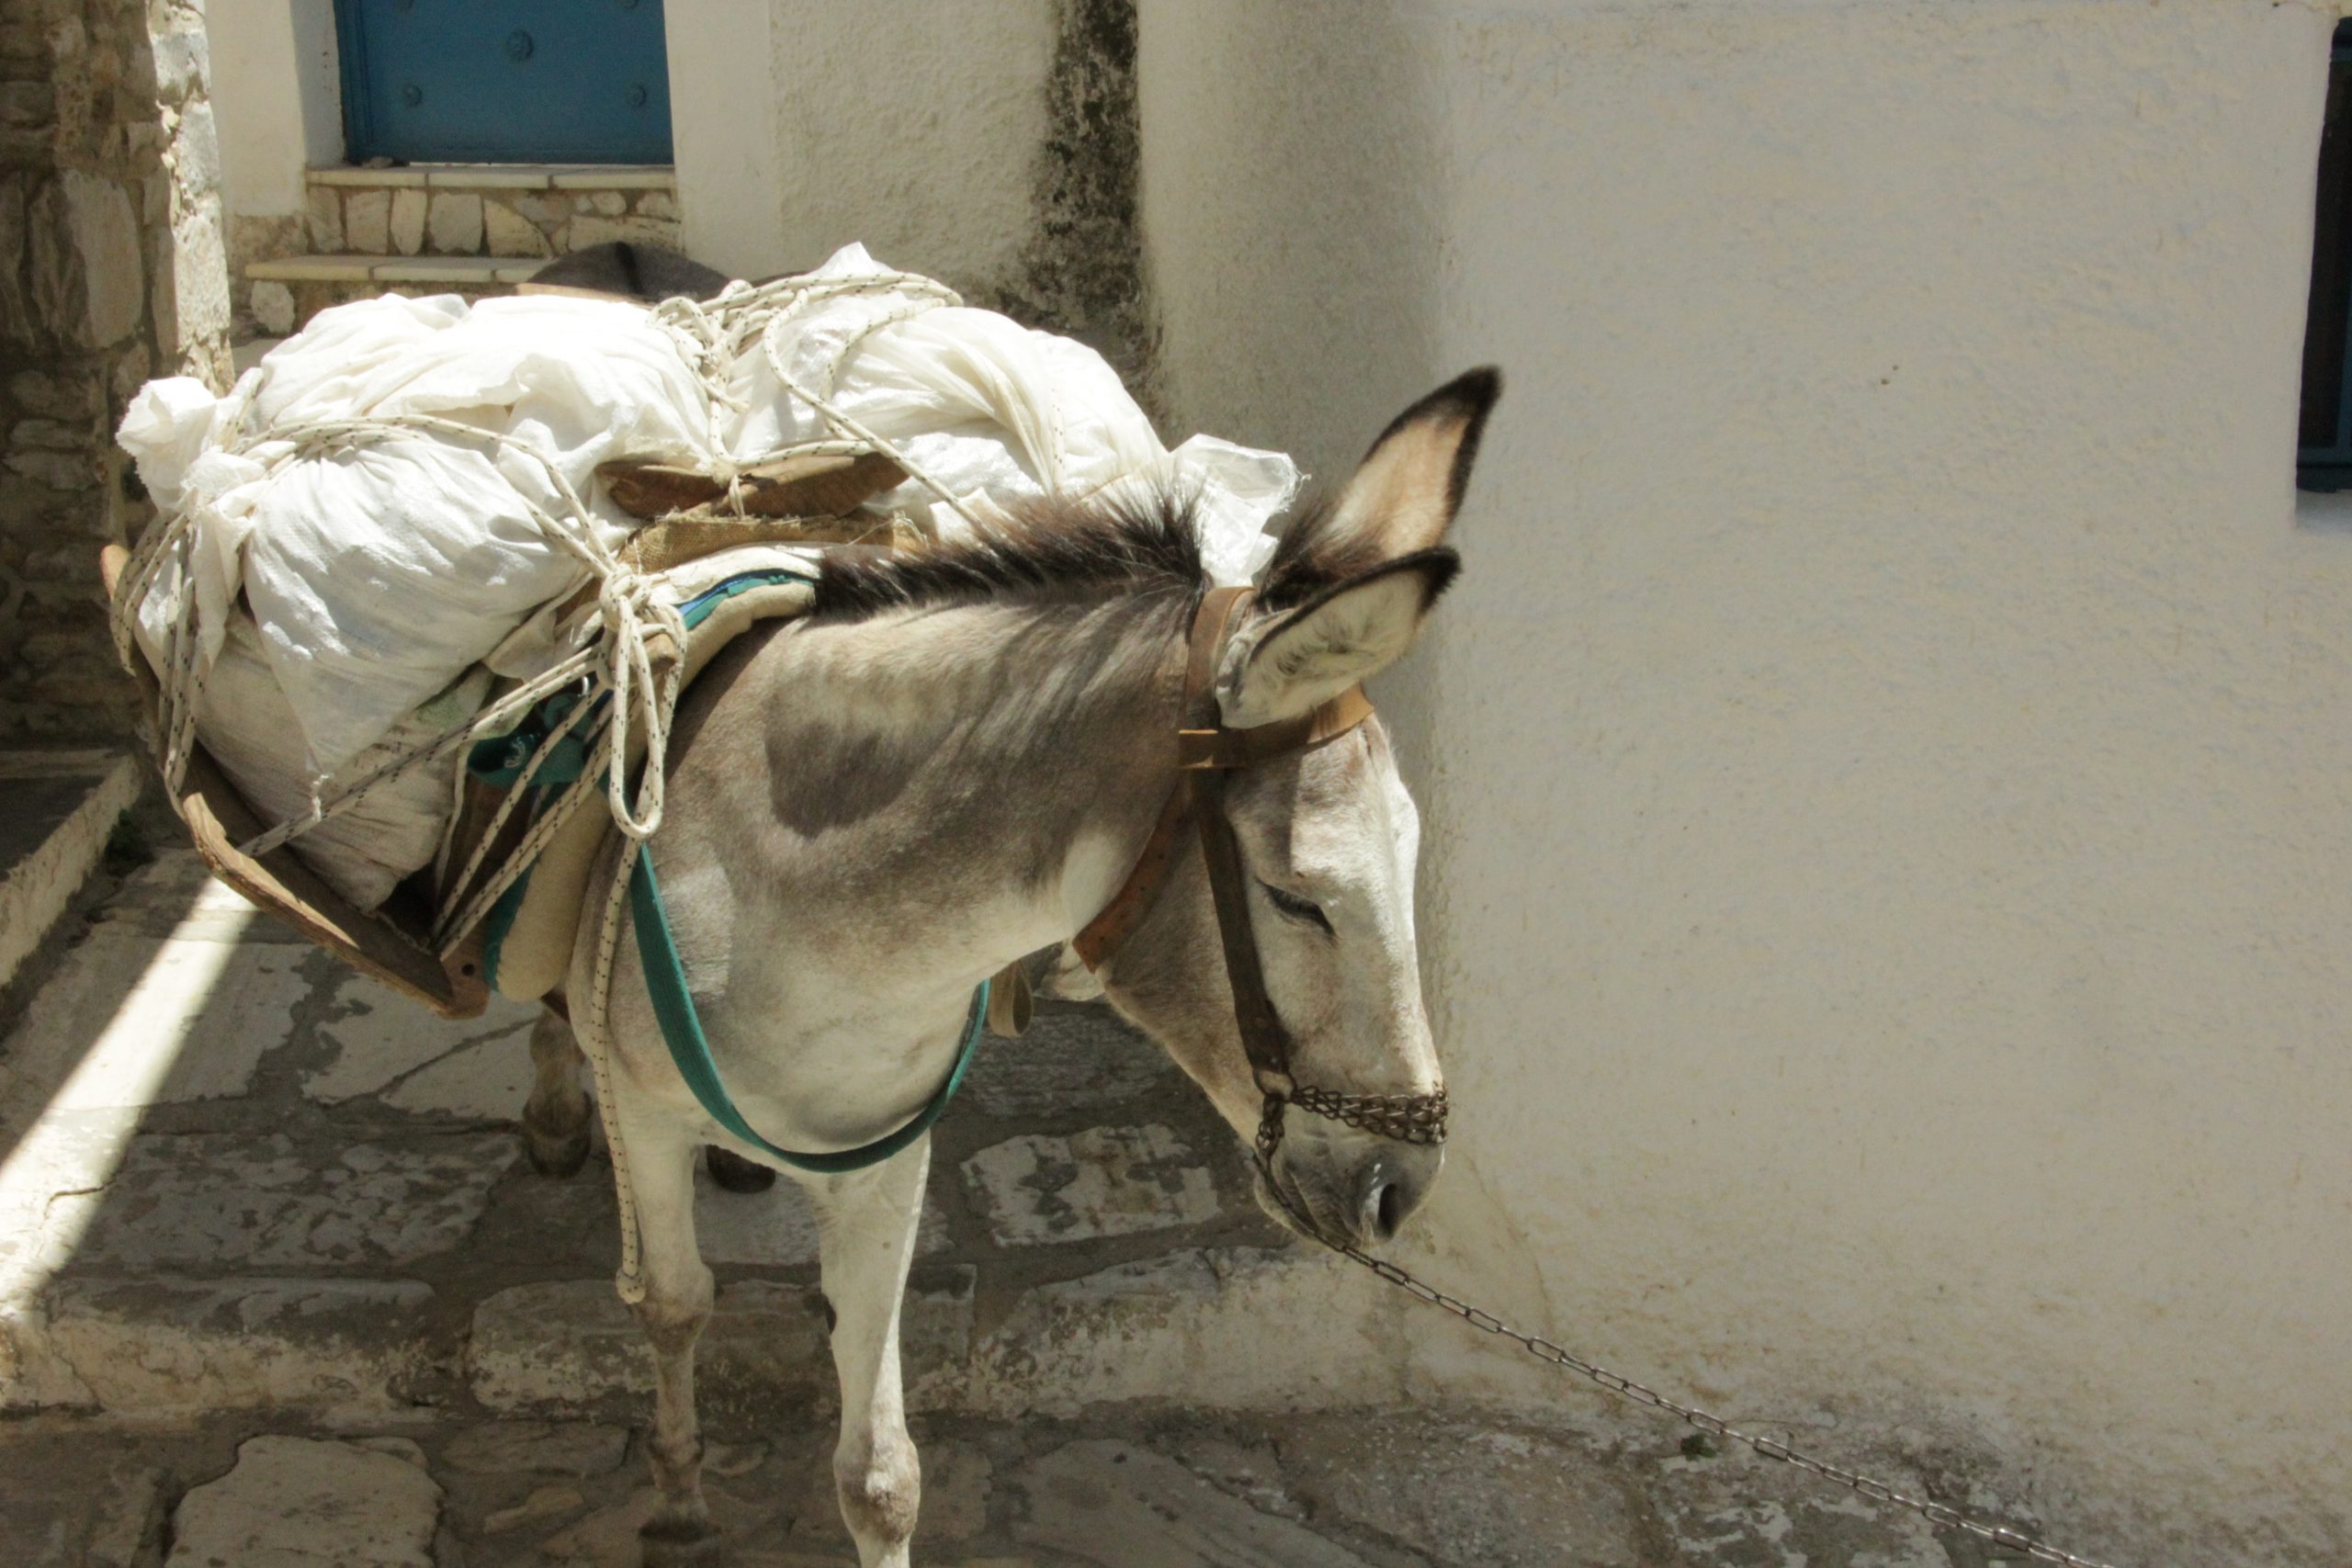 Donkey in Greece